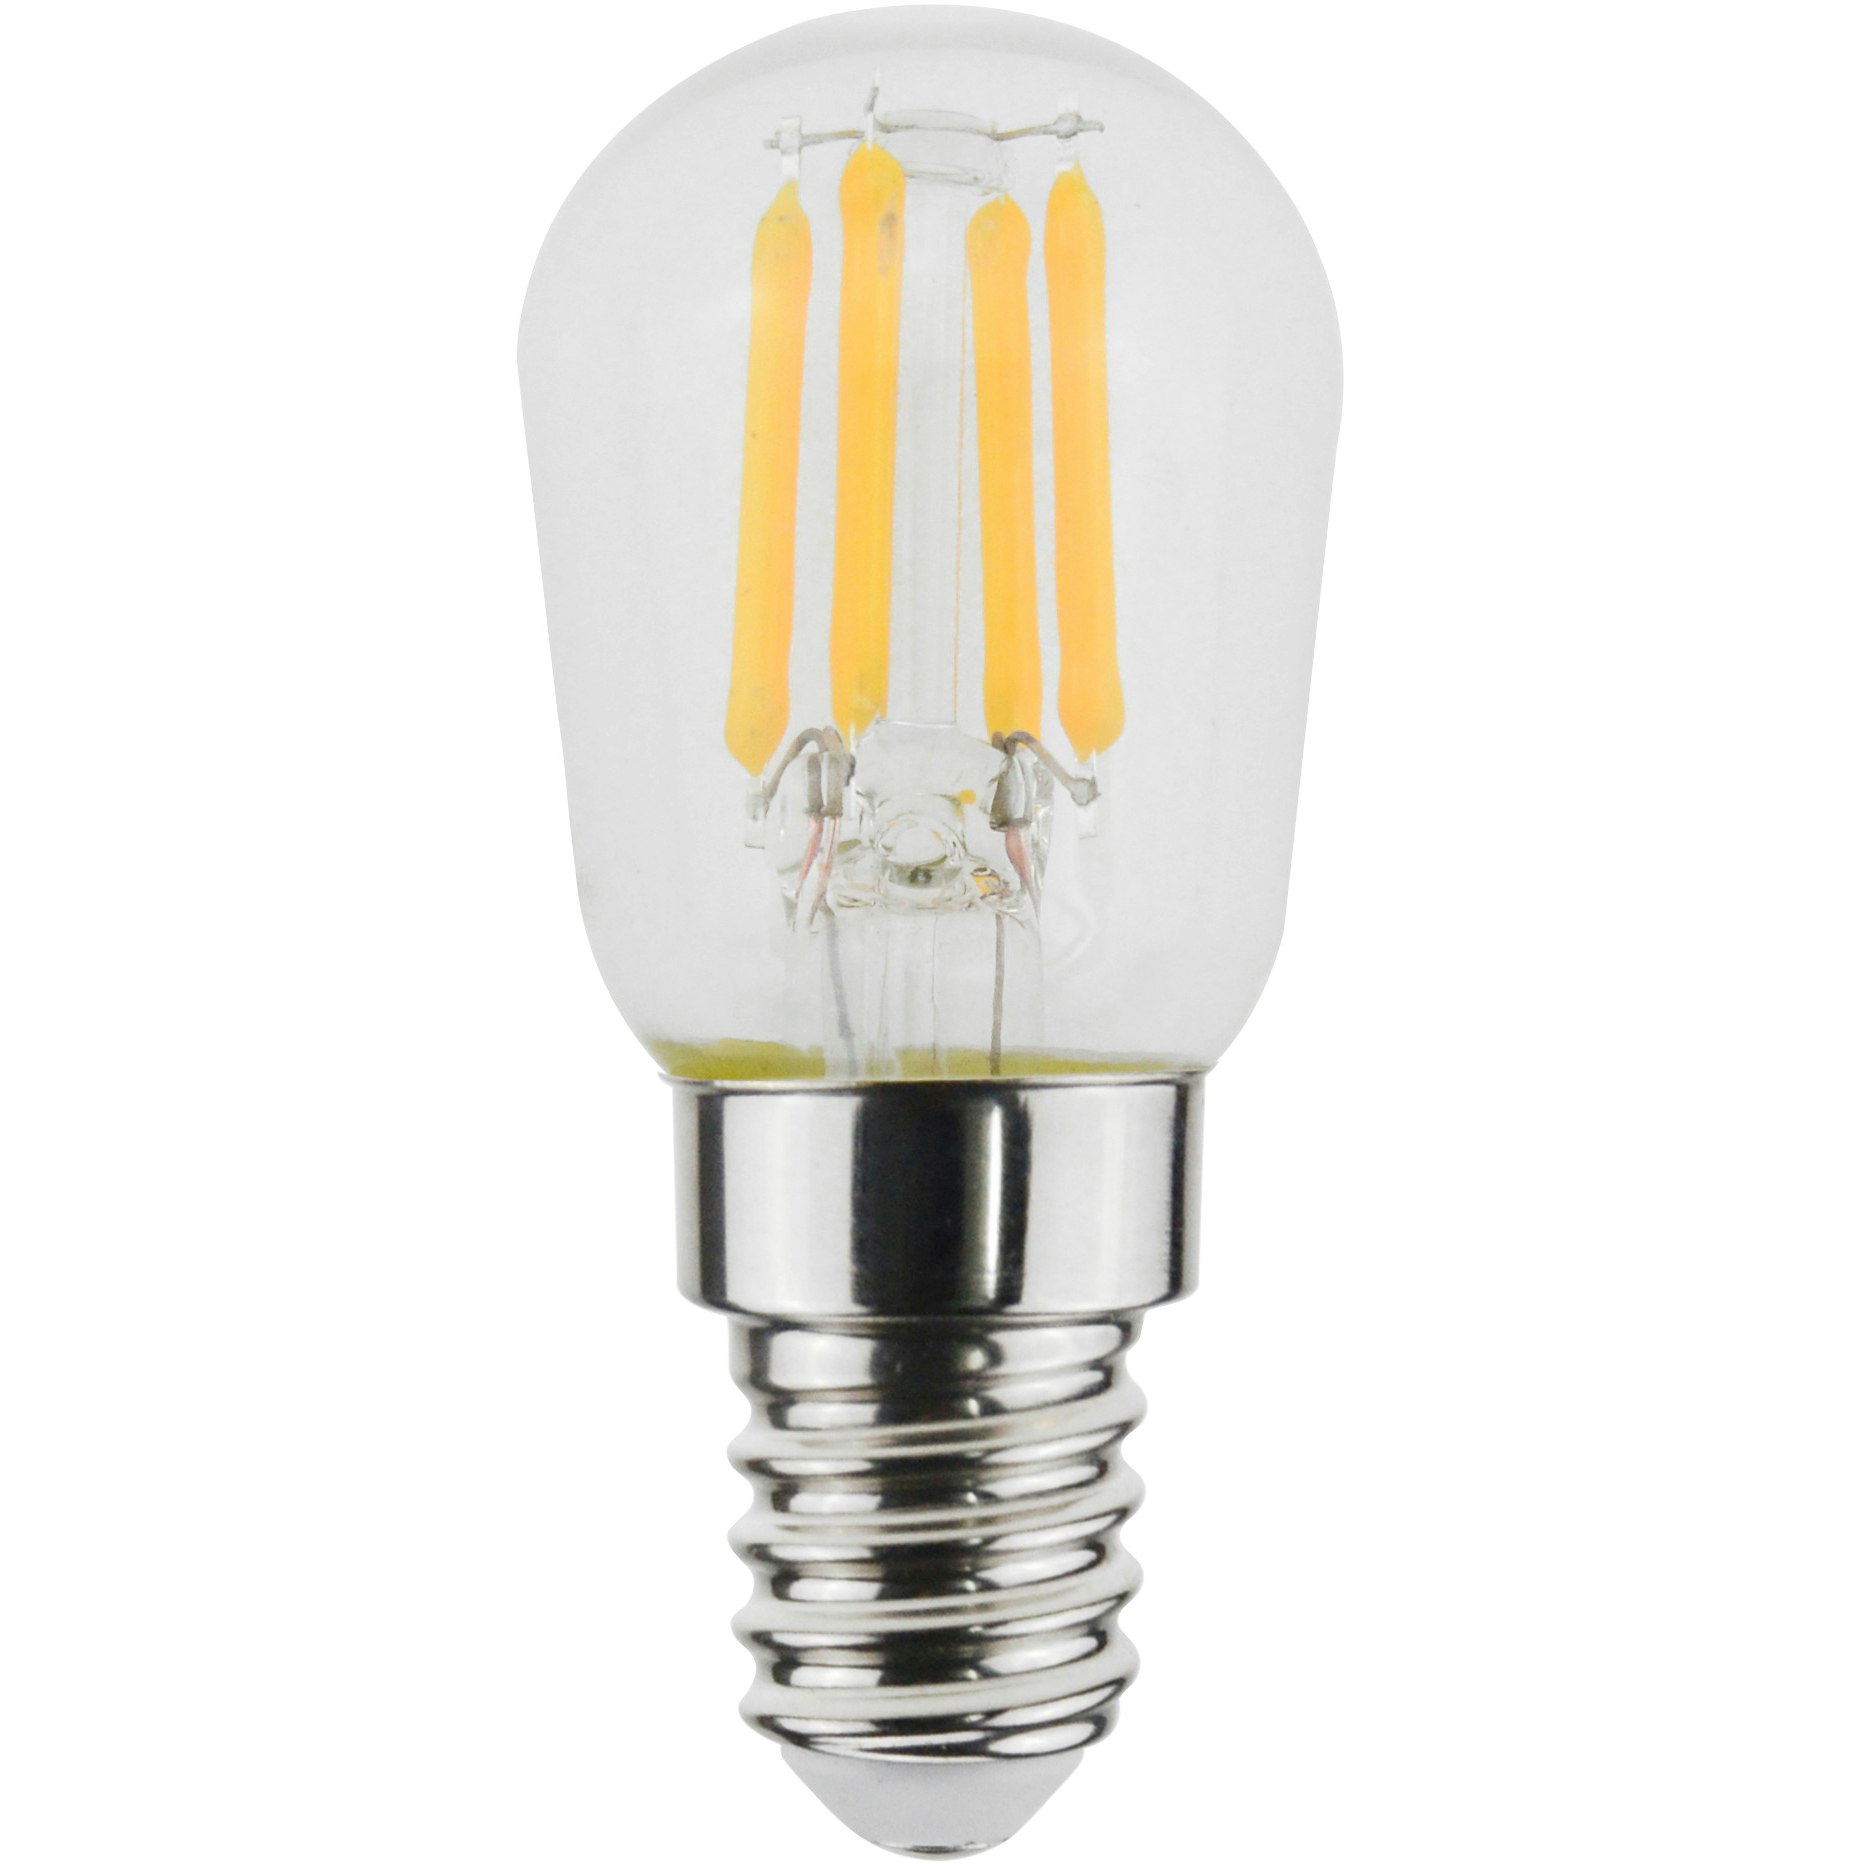 Rekwisieten pepermunt naar voren gebracht LED E14 2.5W 3-s Dim 250/125/48Lm 2700K Pear Lamp - Airam @ RoyalDesign